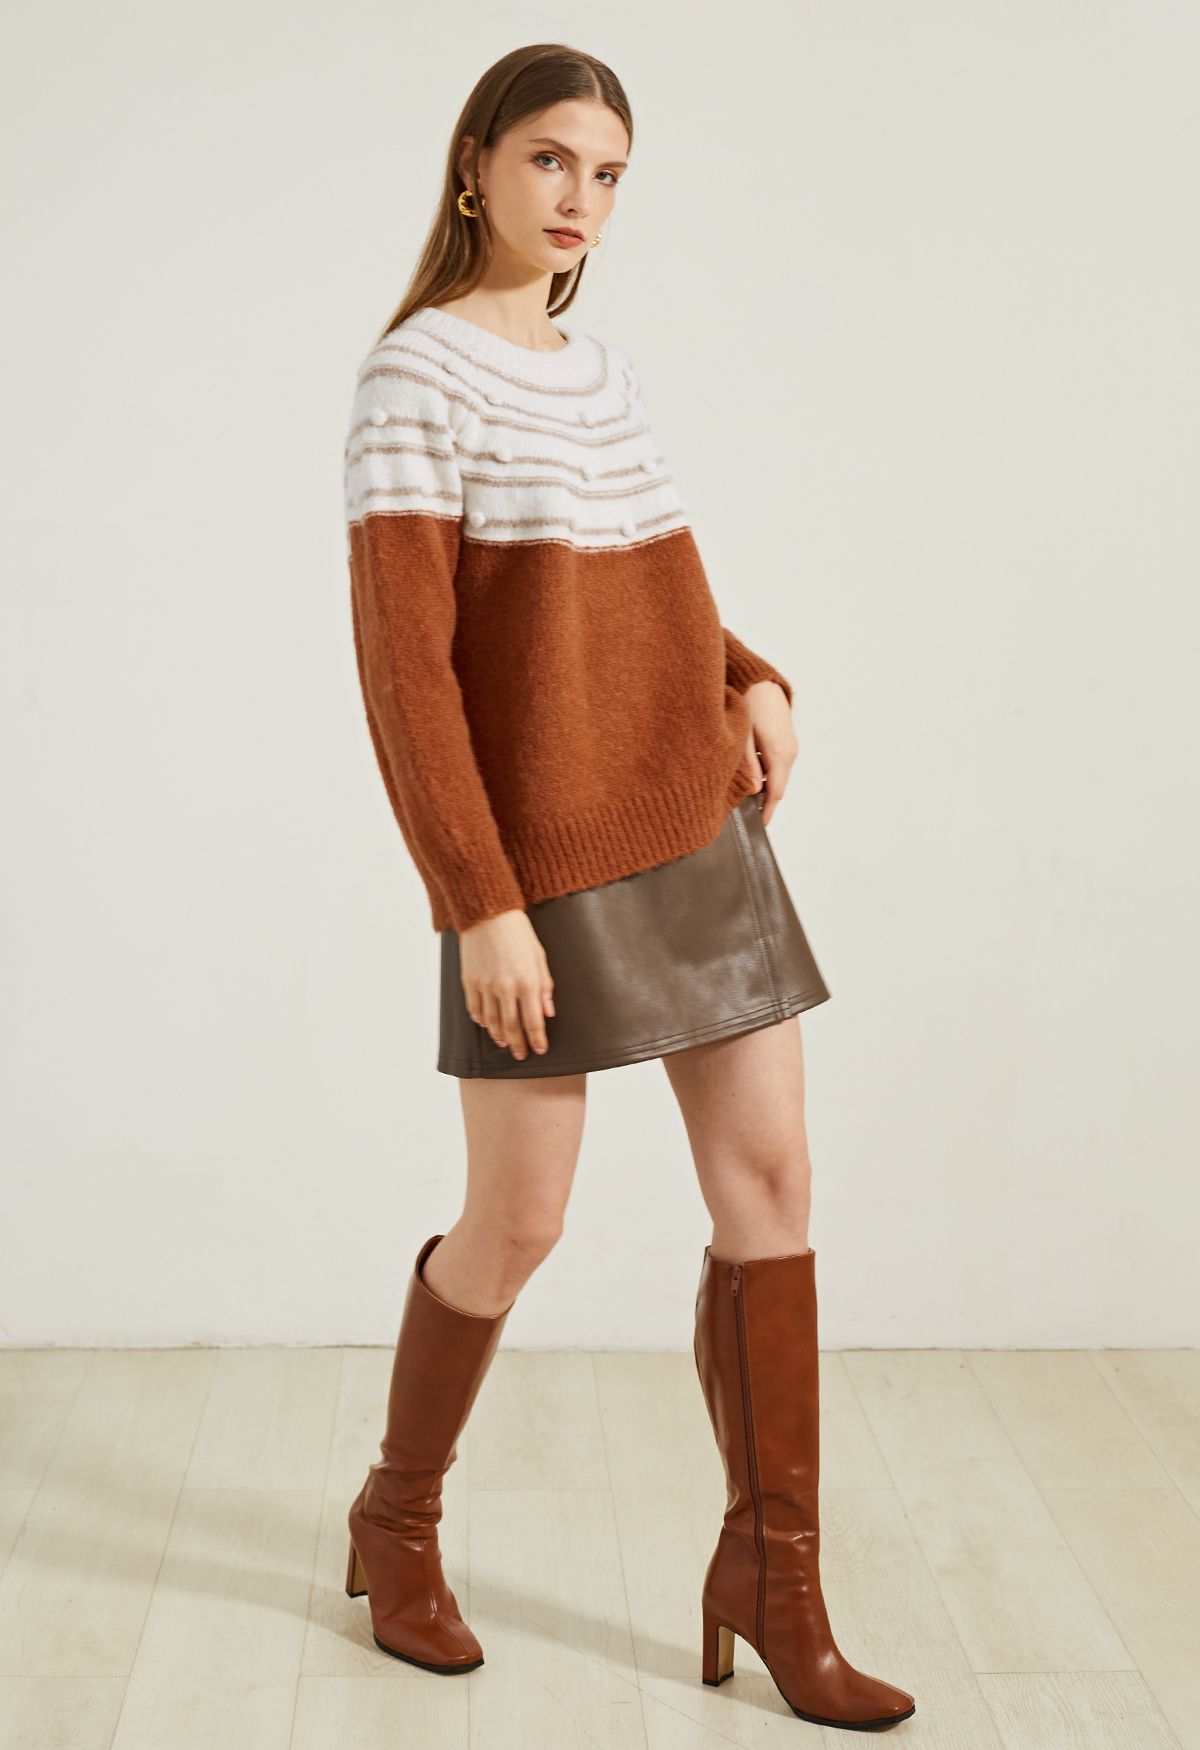 Pom-Pom Fuzzy Slouchy Knit Sweater in Caramel